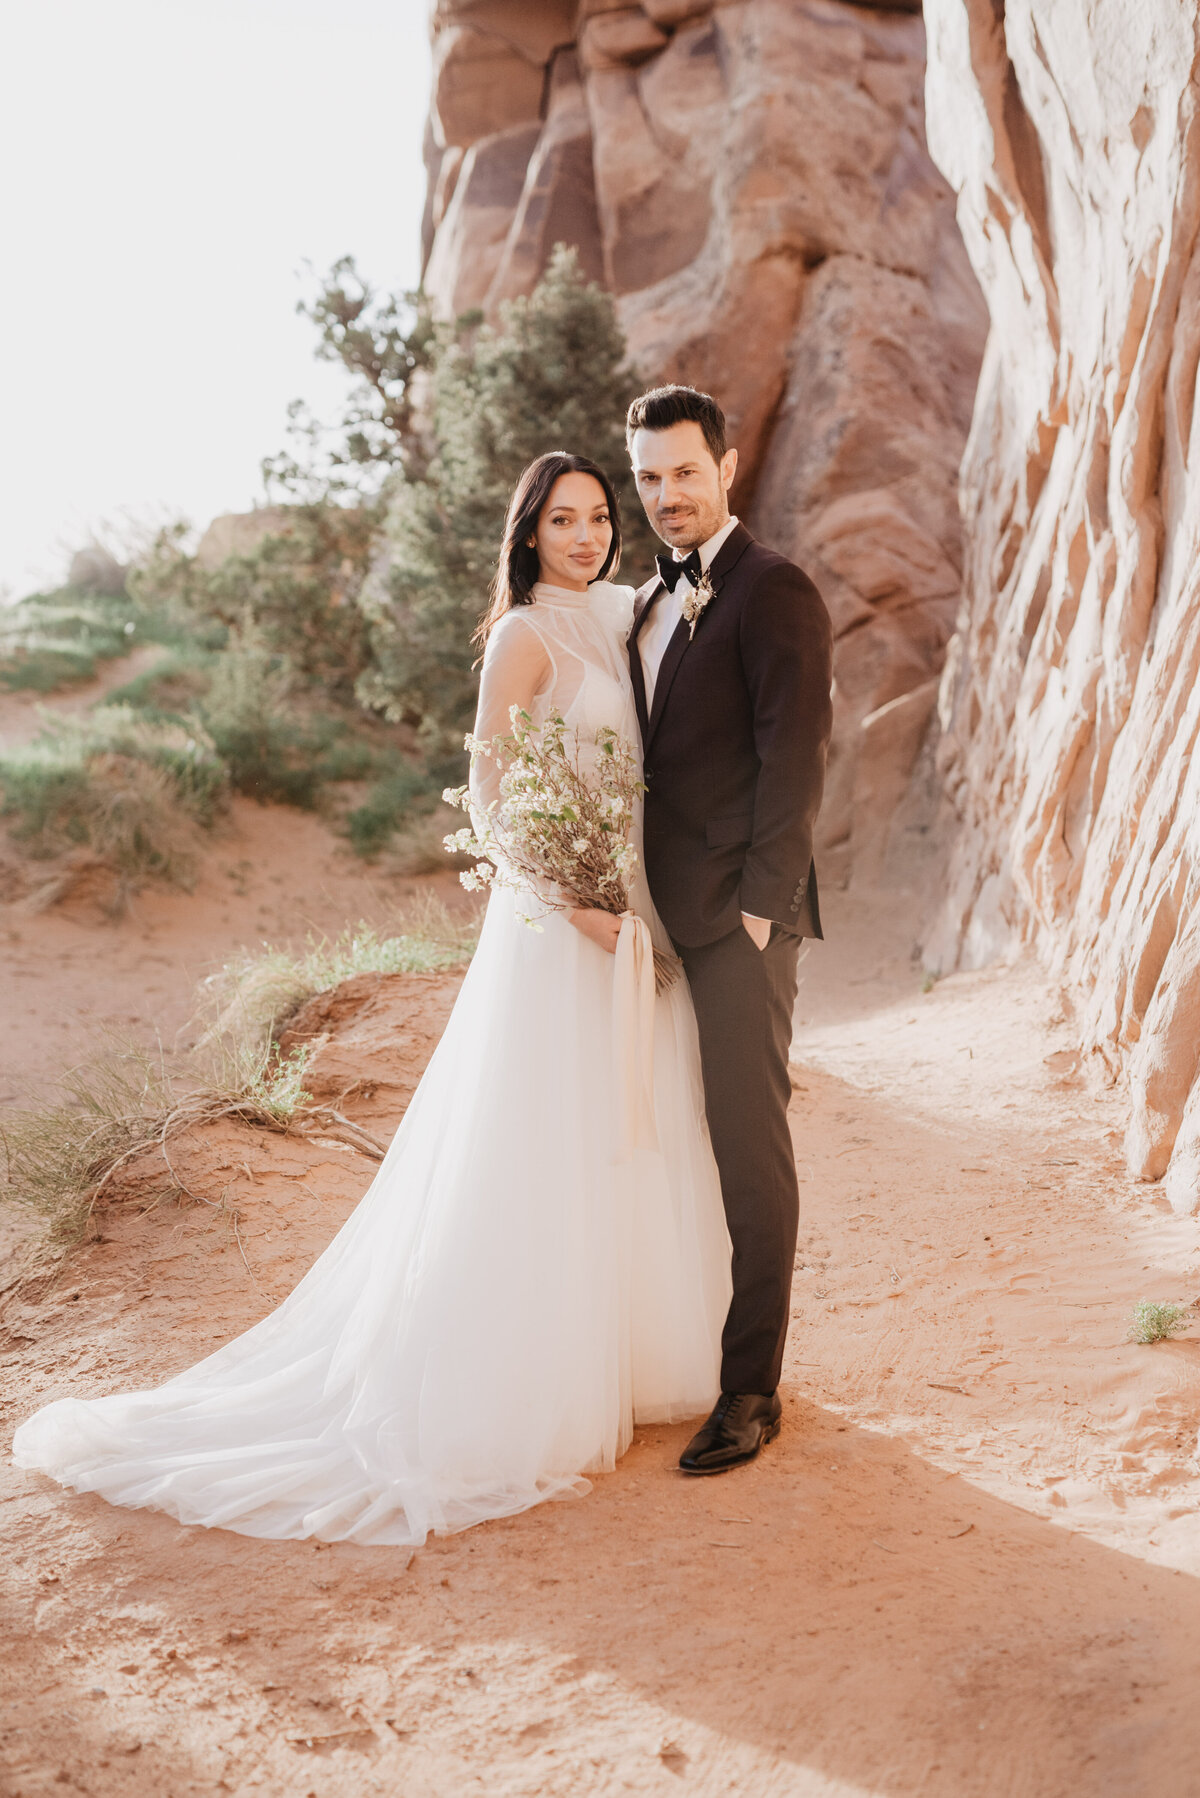 Utah elopement photographer captures bride and groom portraits